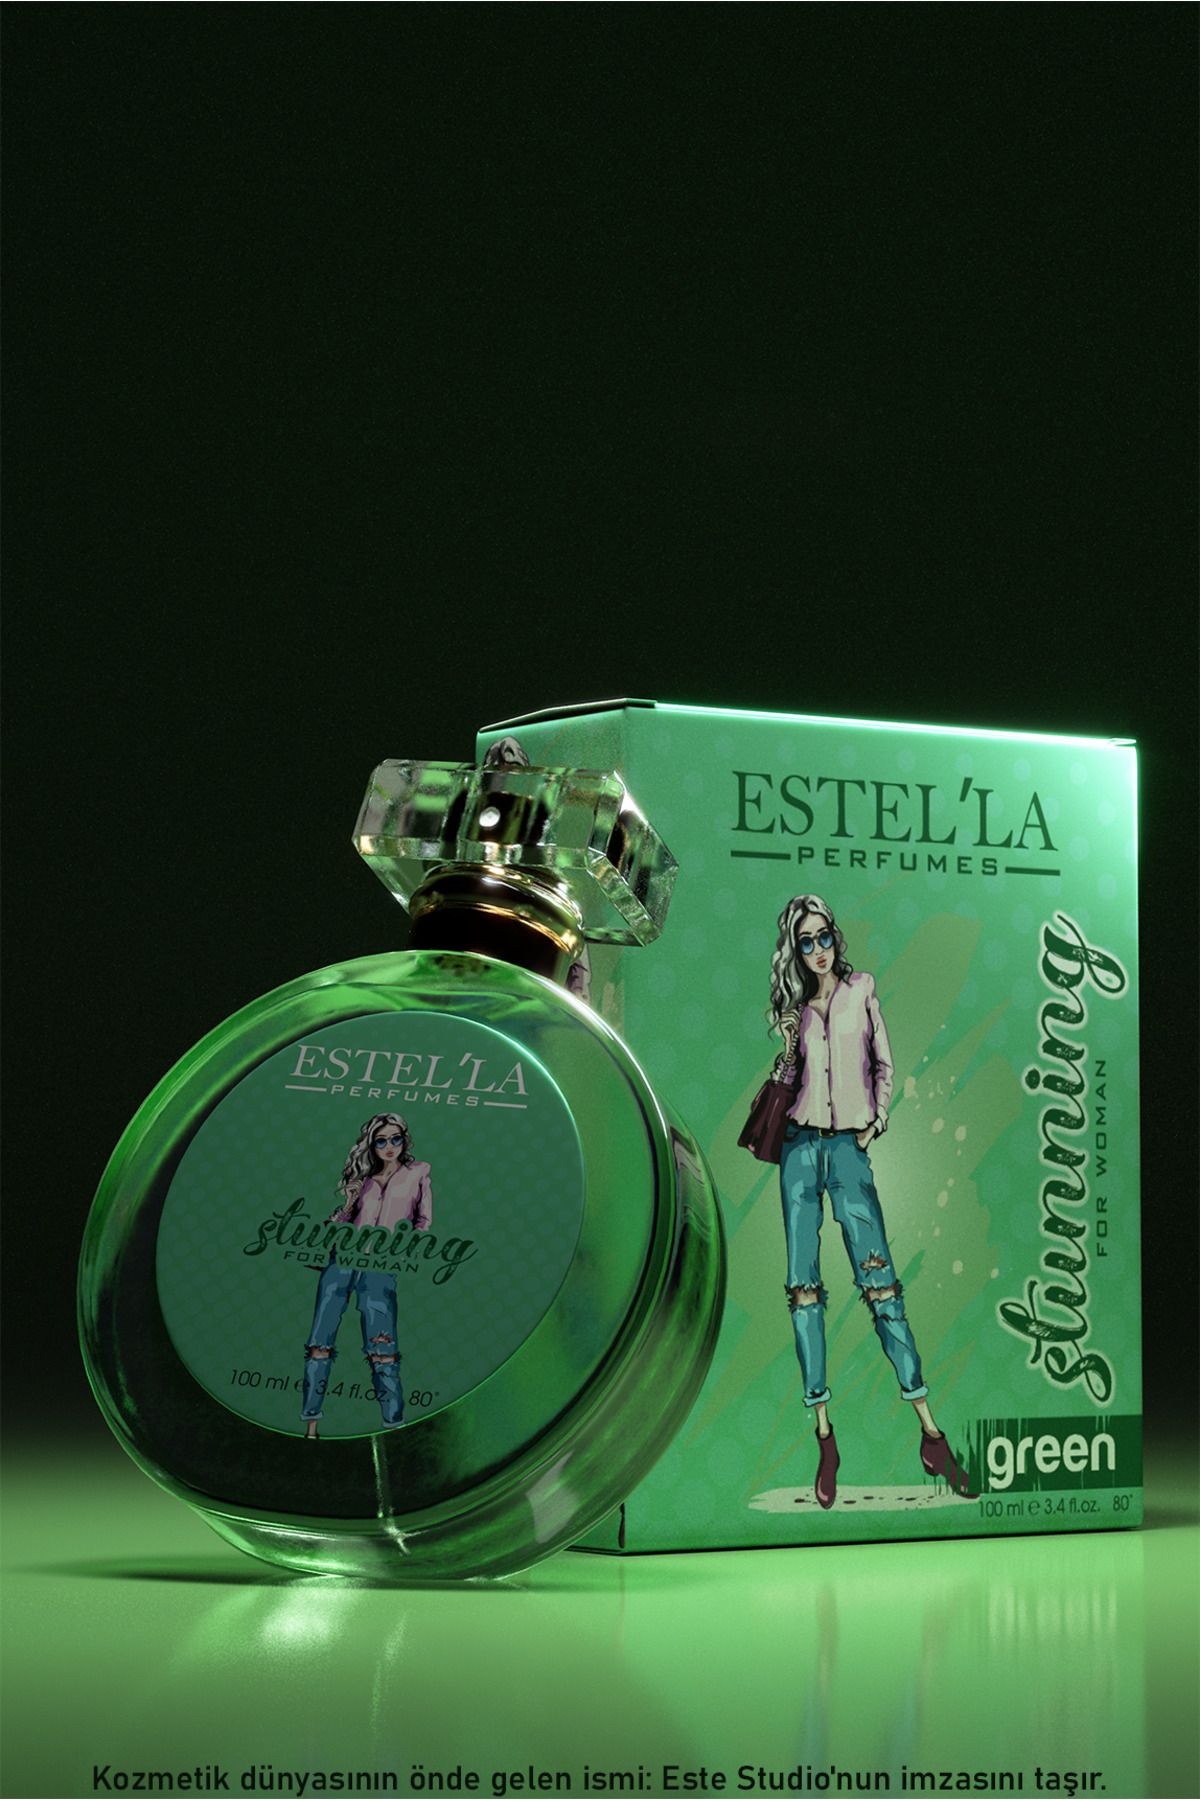 Estella 100 ml Stunning Green Kadın Parfümü ile Kendinize Özgü Bir İmza Yaratın - Stilinize Farklılık Katın